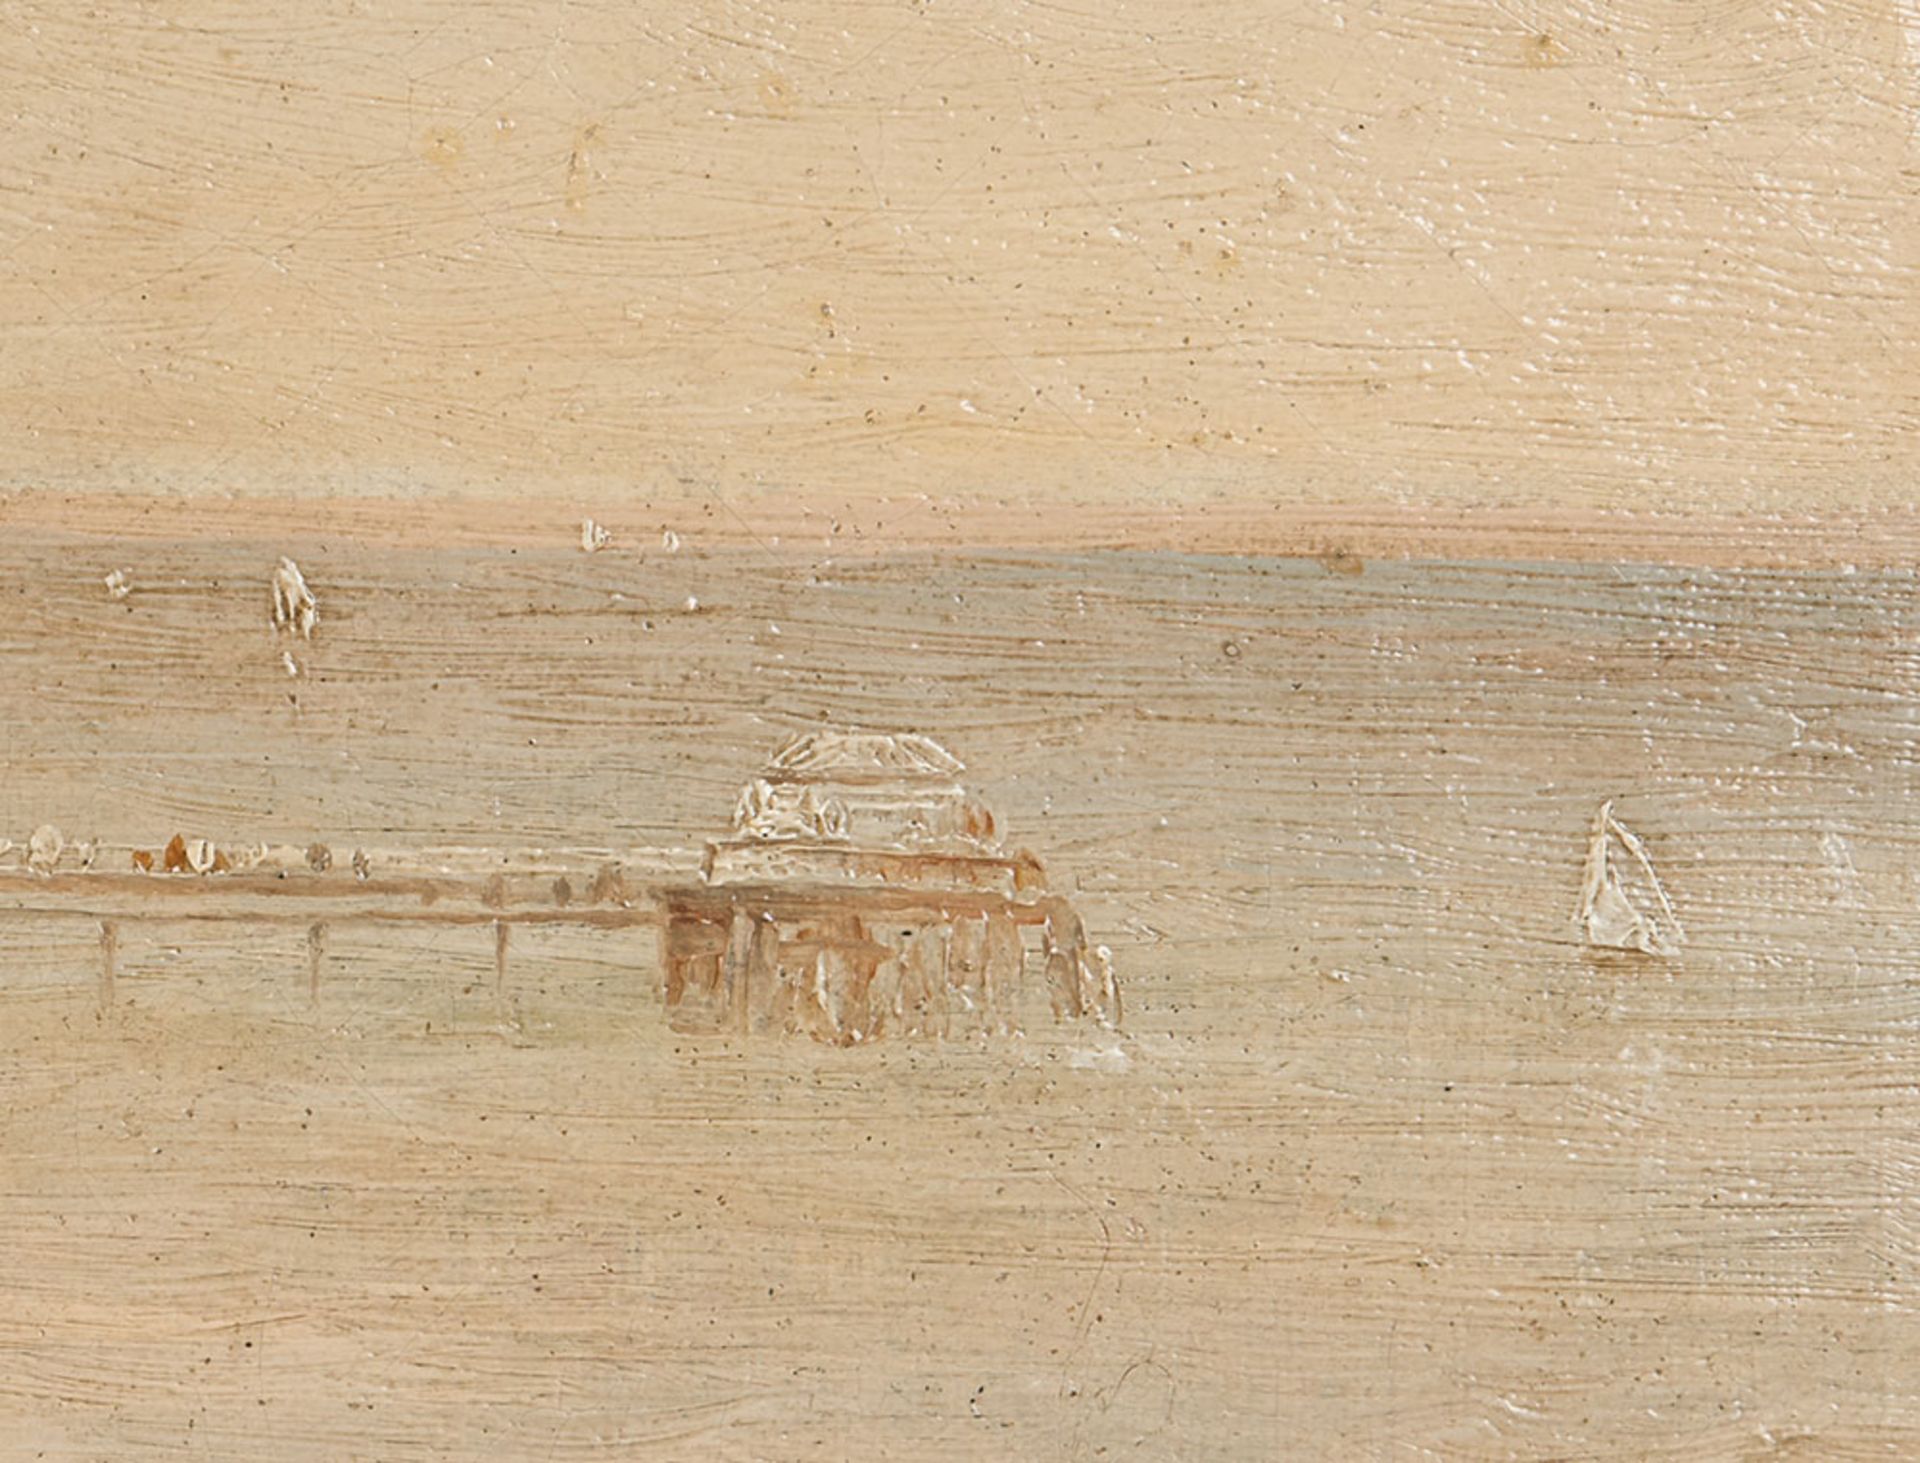 Gustave De Breanski, Coastline Oil On Canvas, 19th C. - Image 12 of 12